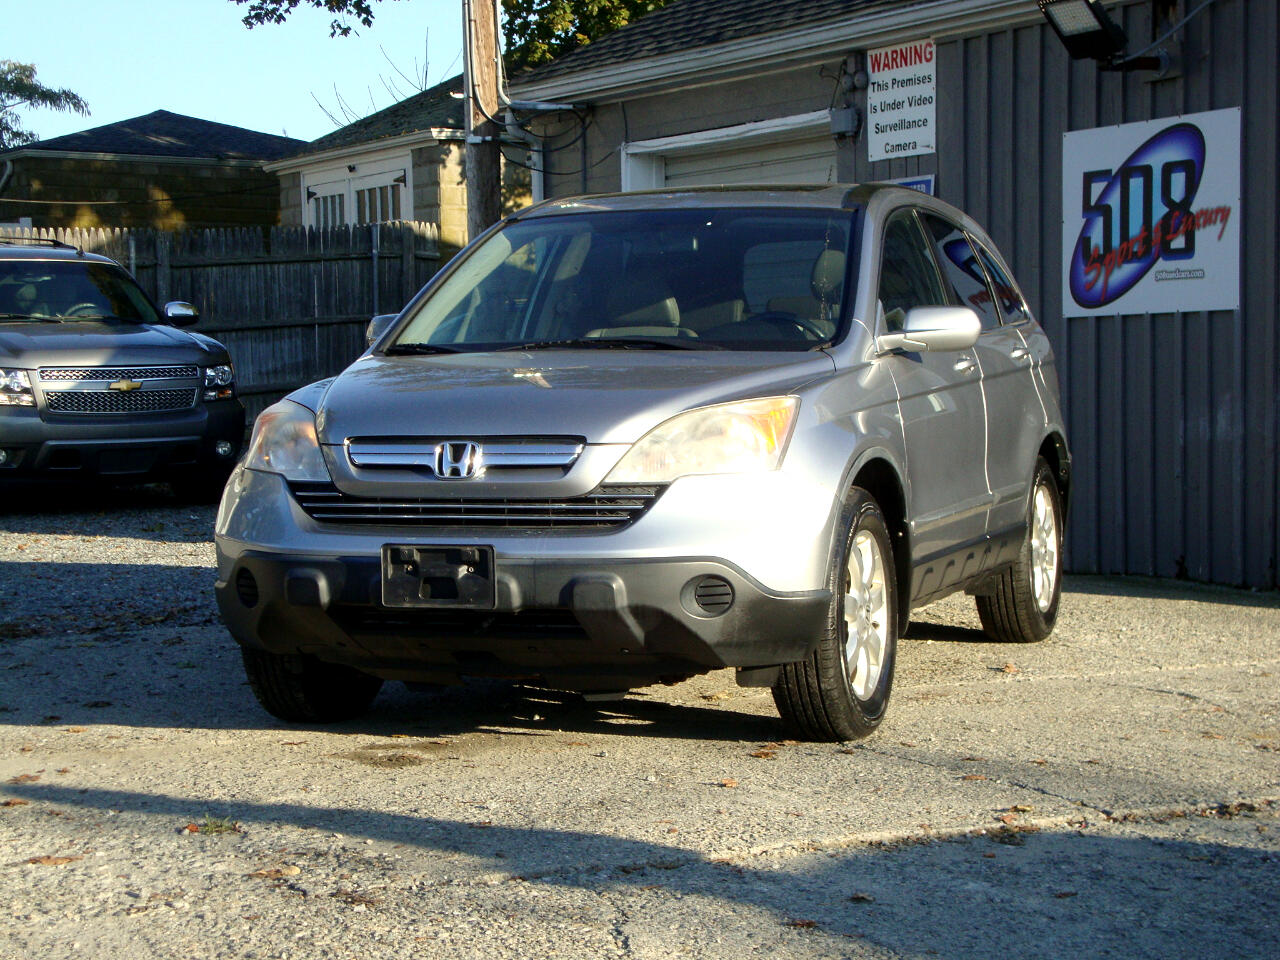 Honda CR-V  2007